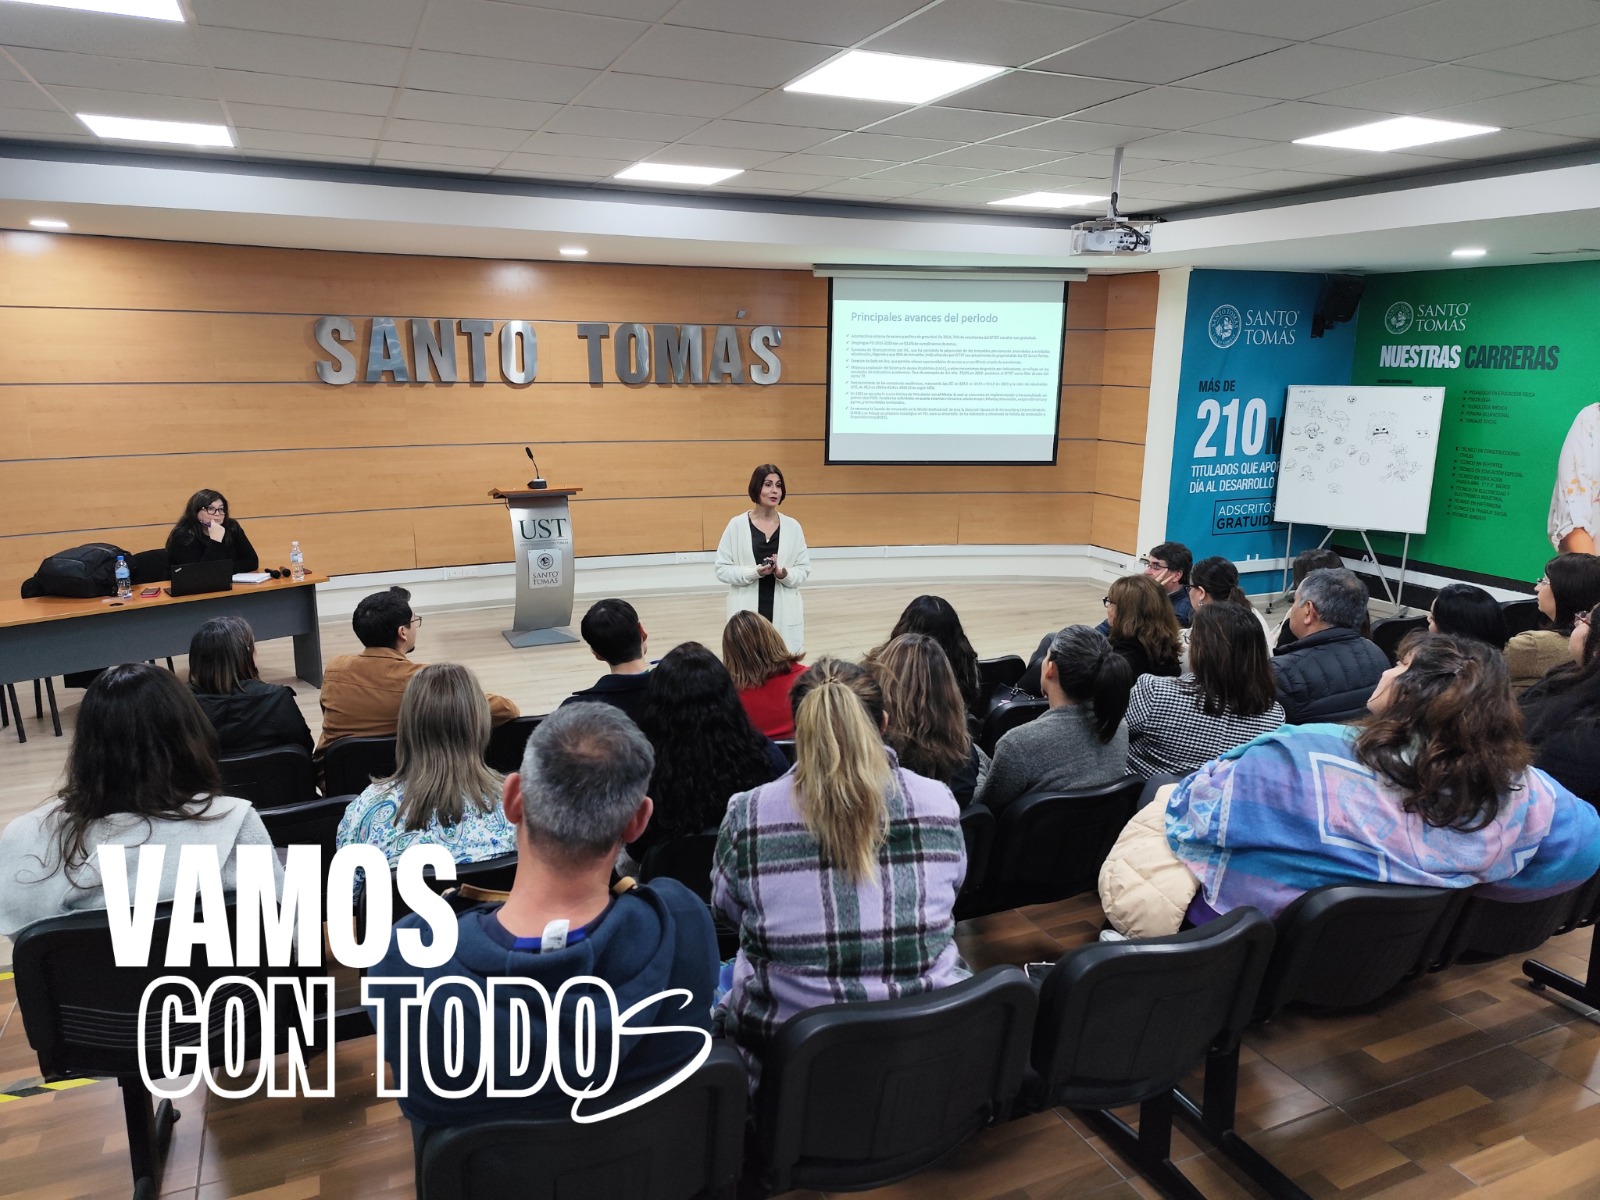 CFT Santo Tomás La Serena se suma al “Vamos con todos” en un nuevo proceso de acreditación